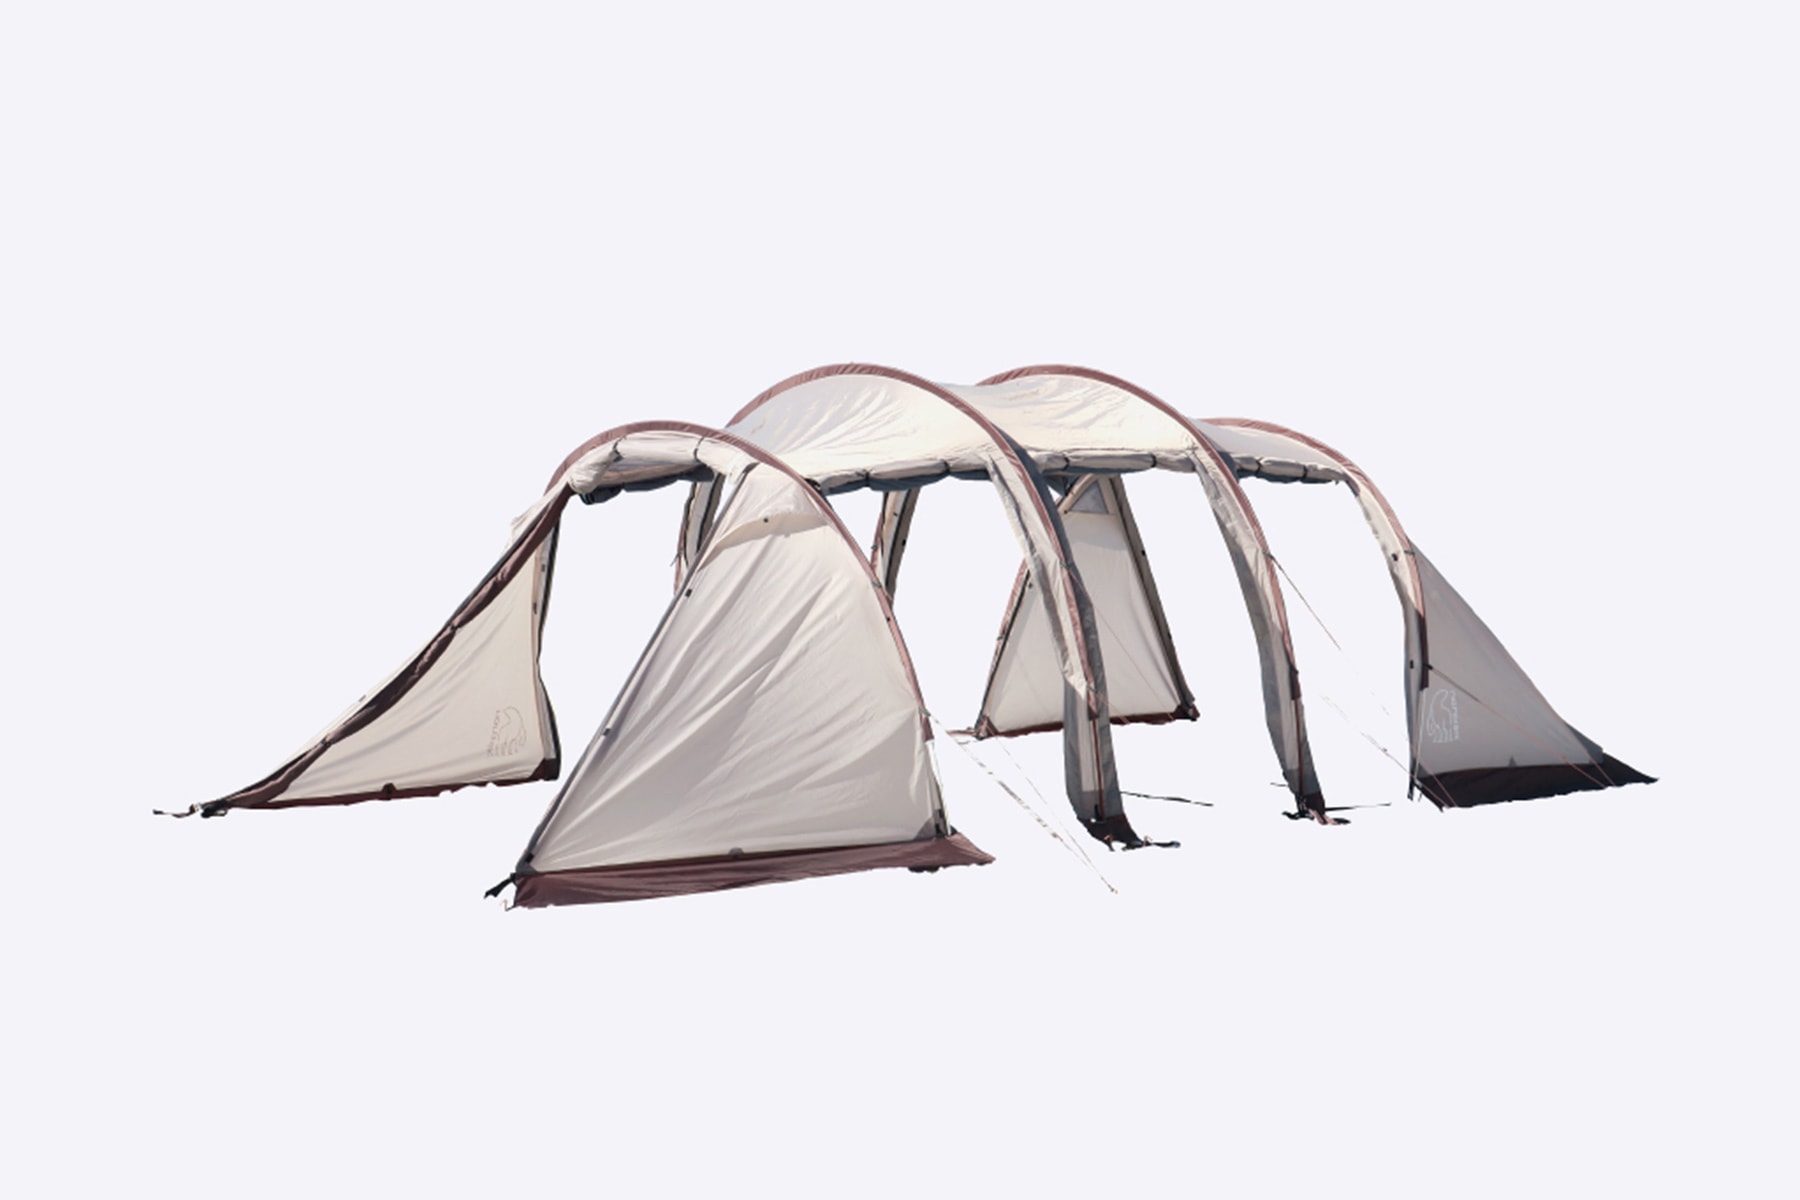 丹麥戶外品牌 Nordisk 推出全新露營帳篷